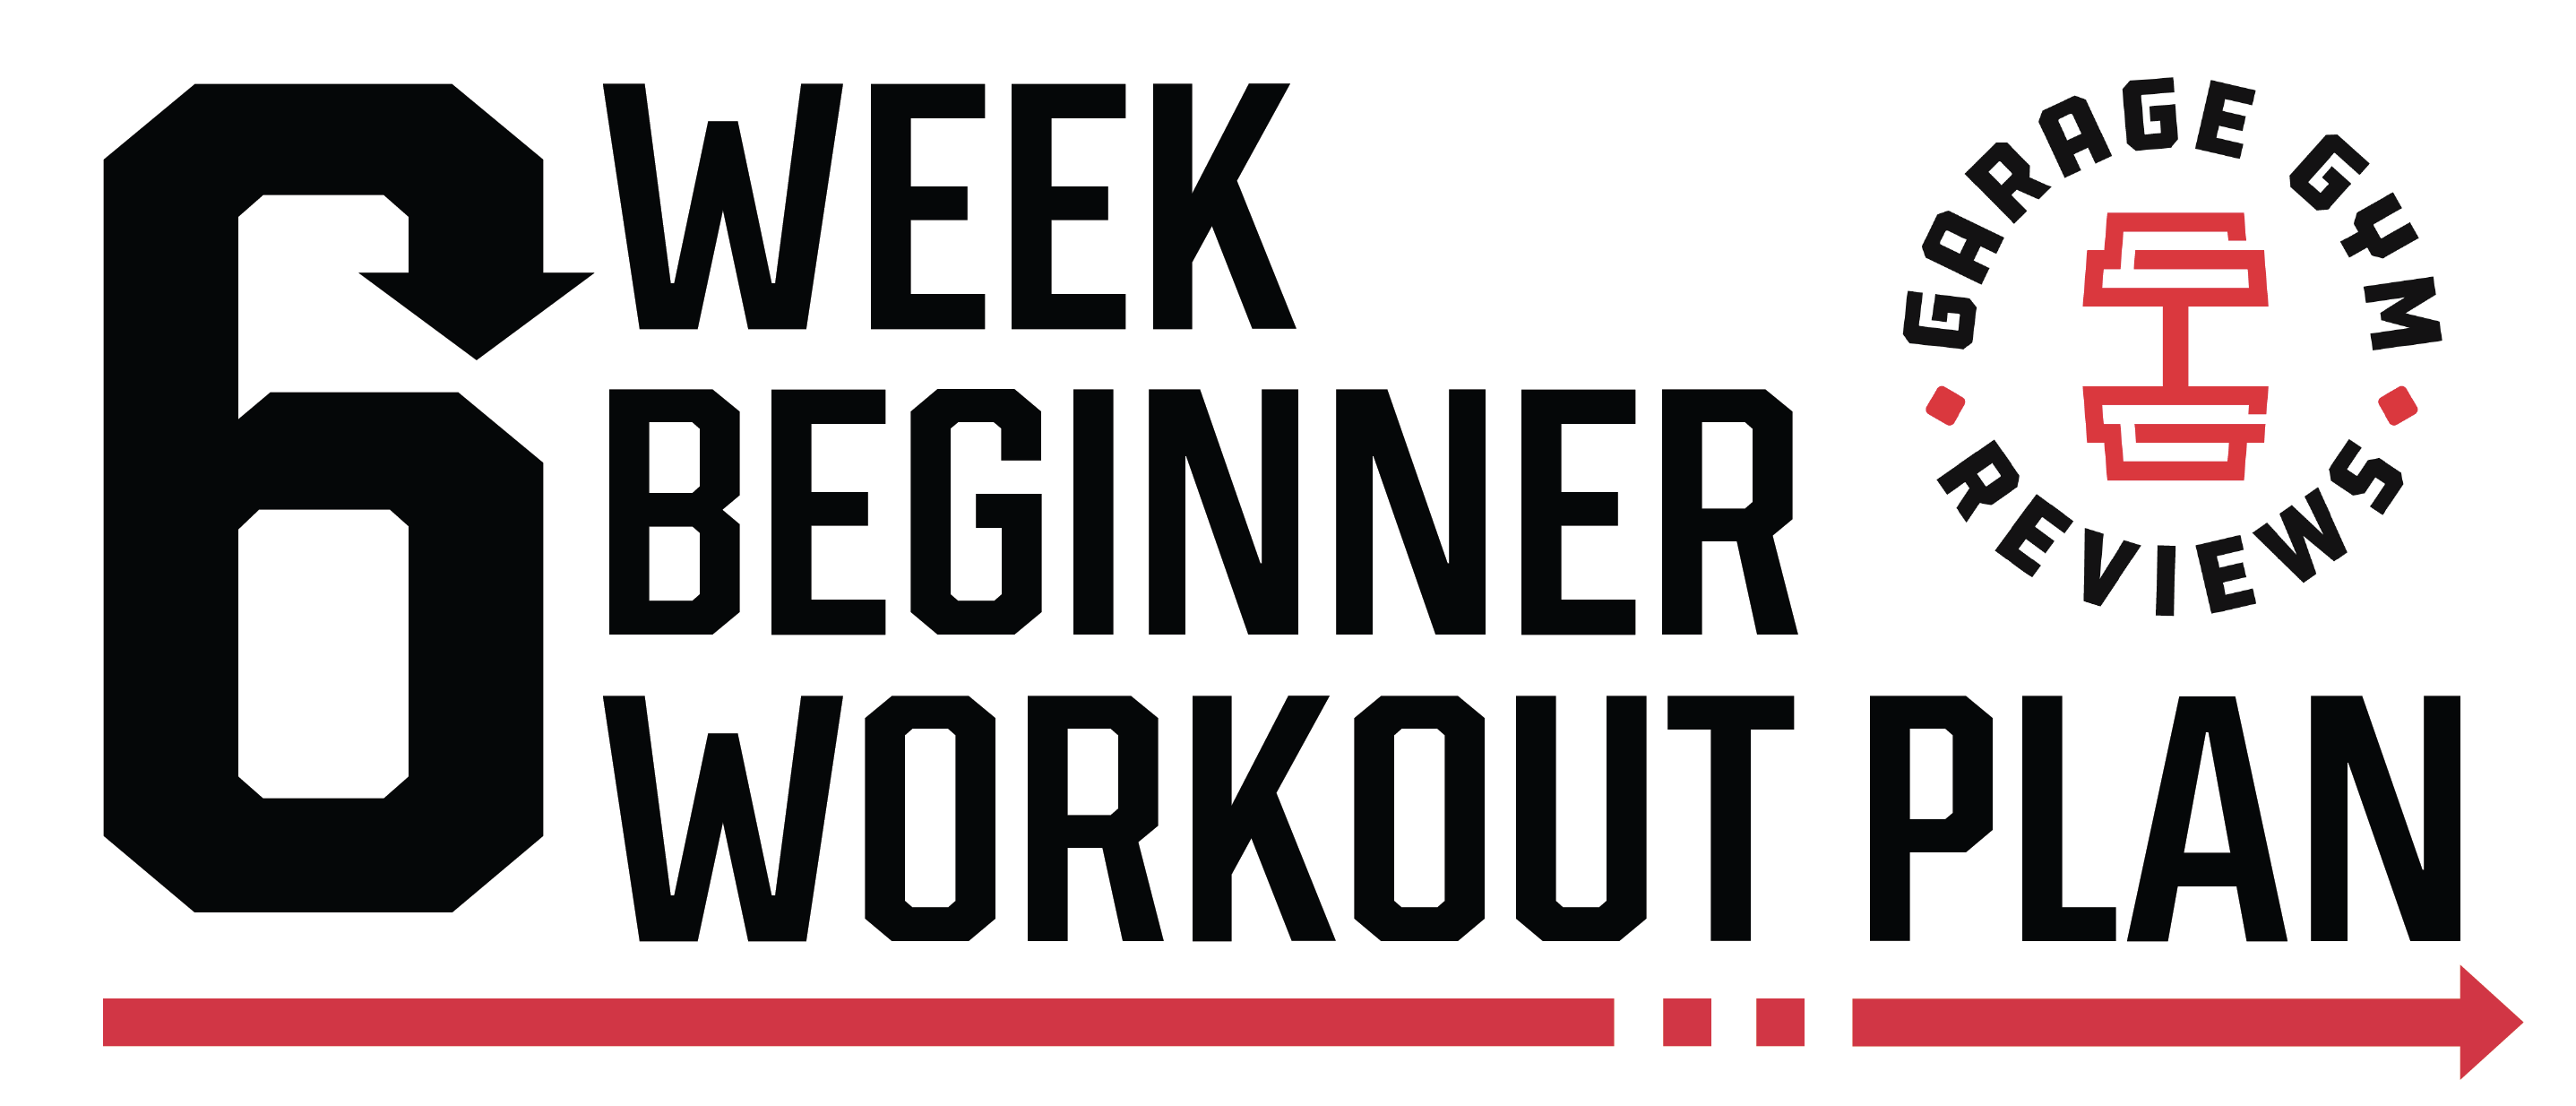 Beginner Workout Routines